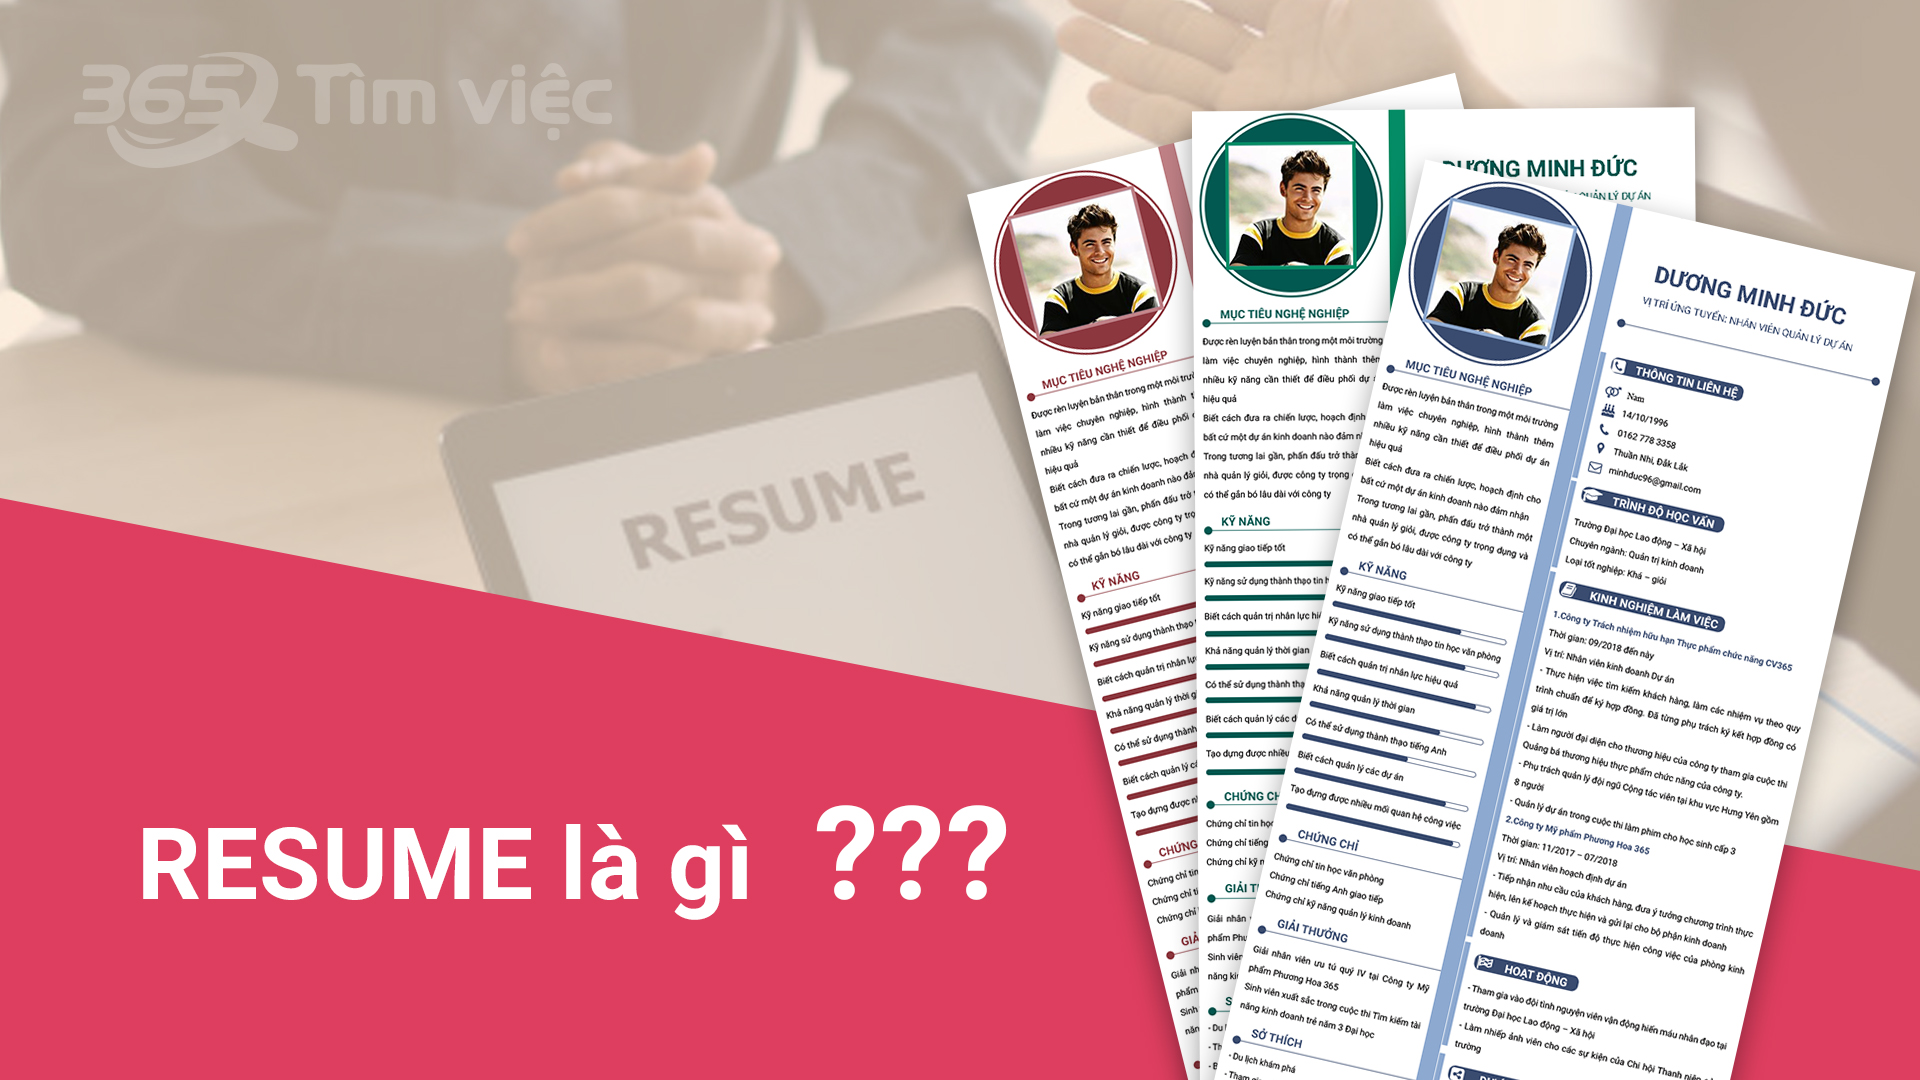 Resume là gì? Cách tạo Resume ấn tượng với nhà tuyển dụng